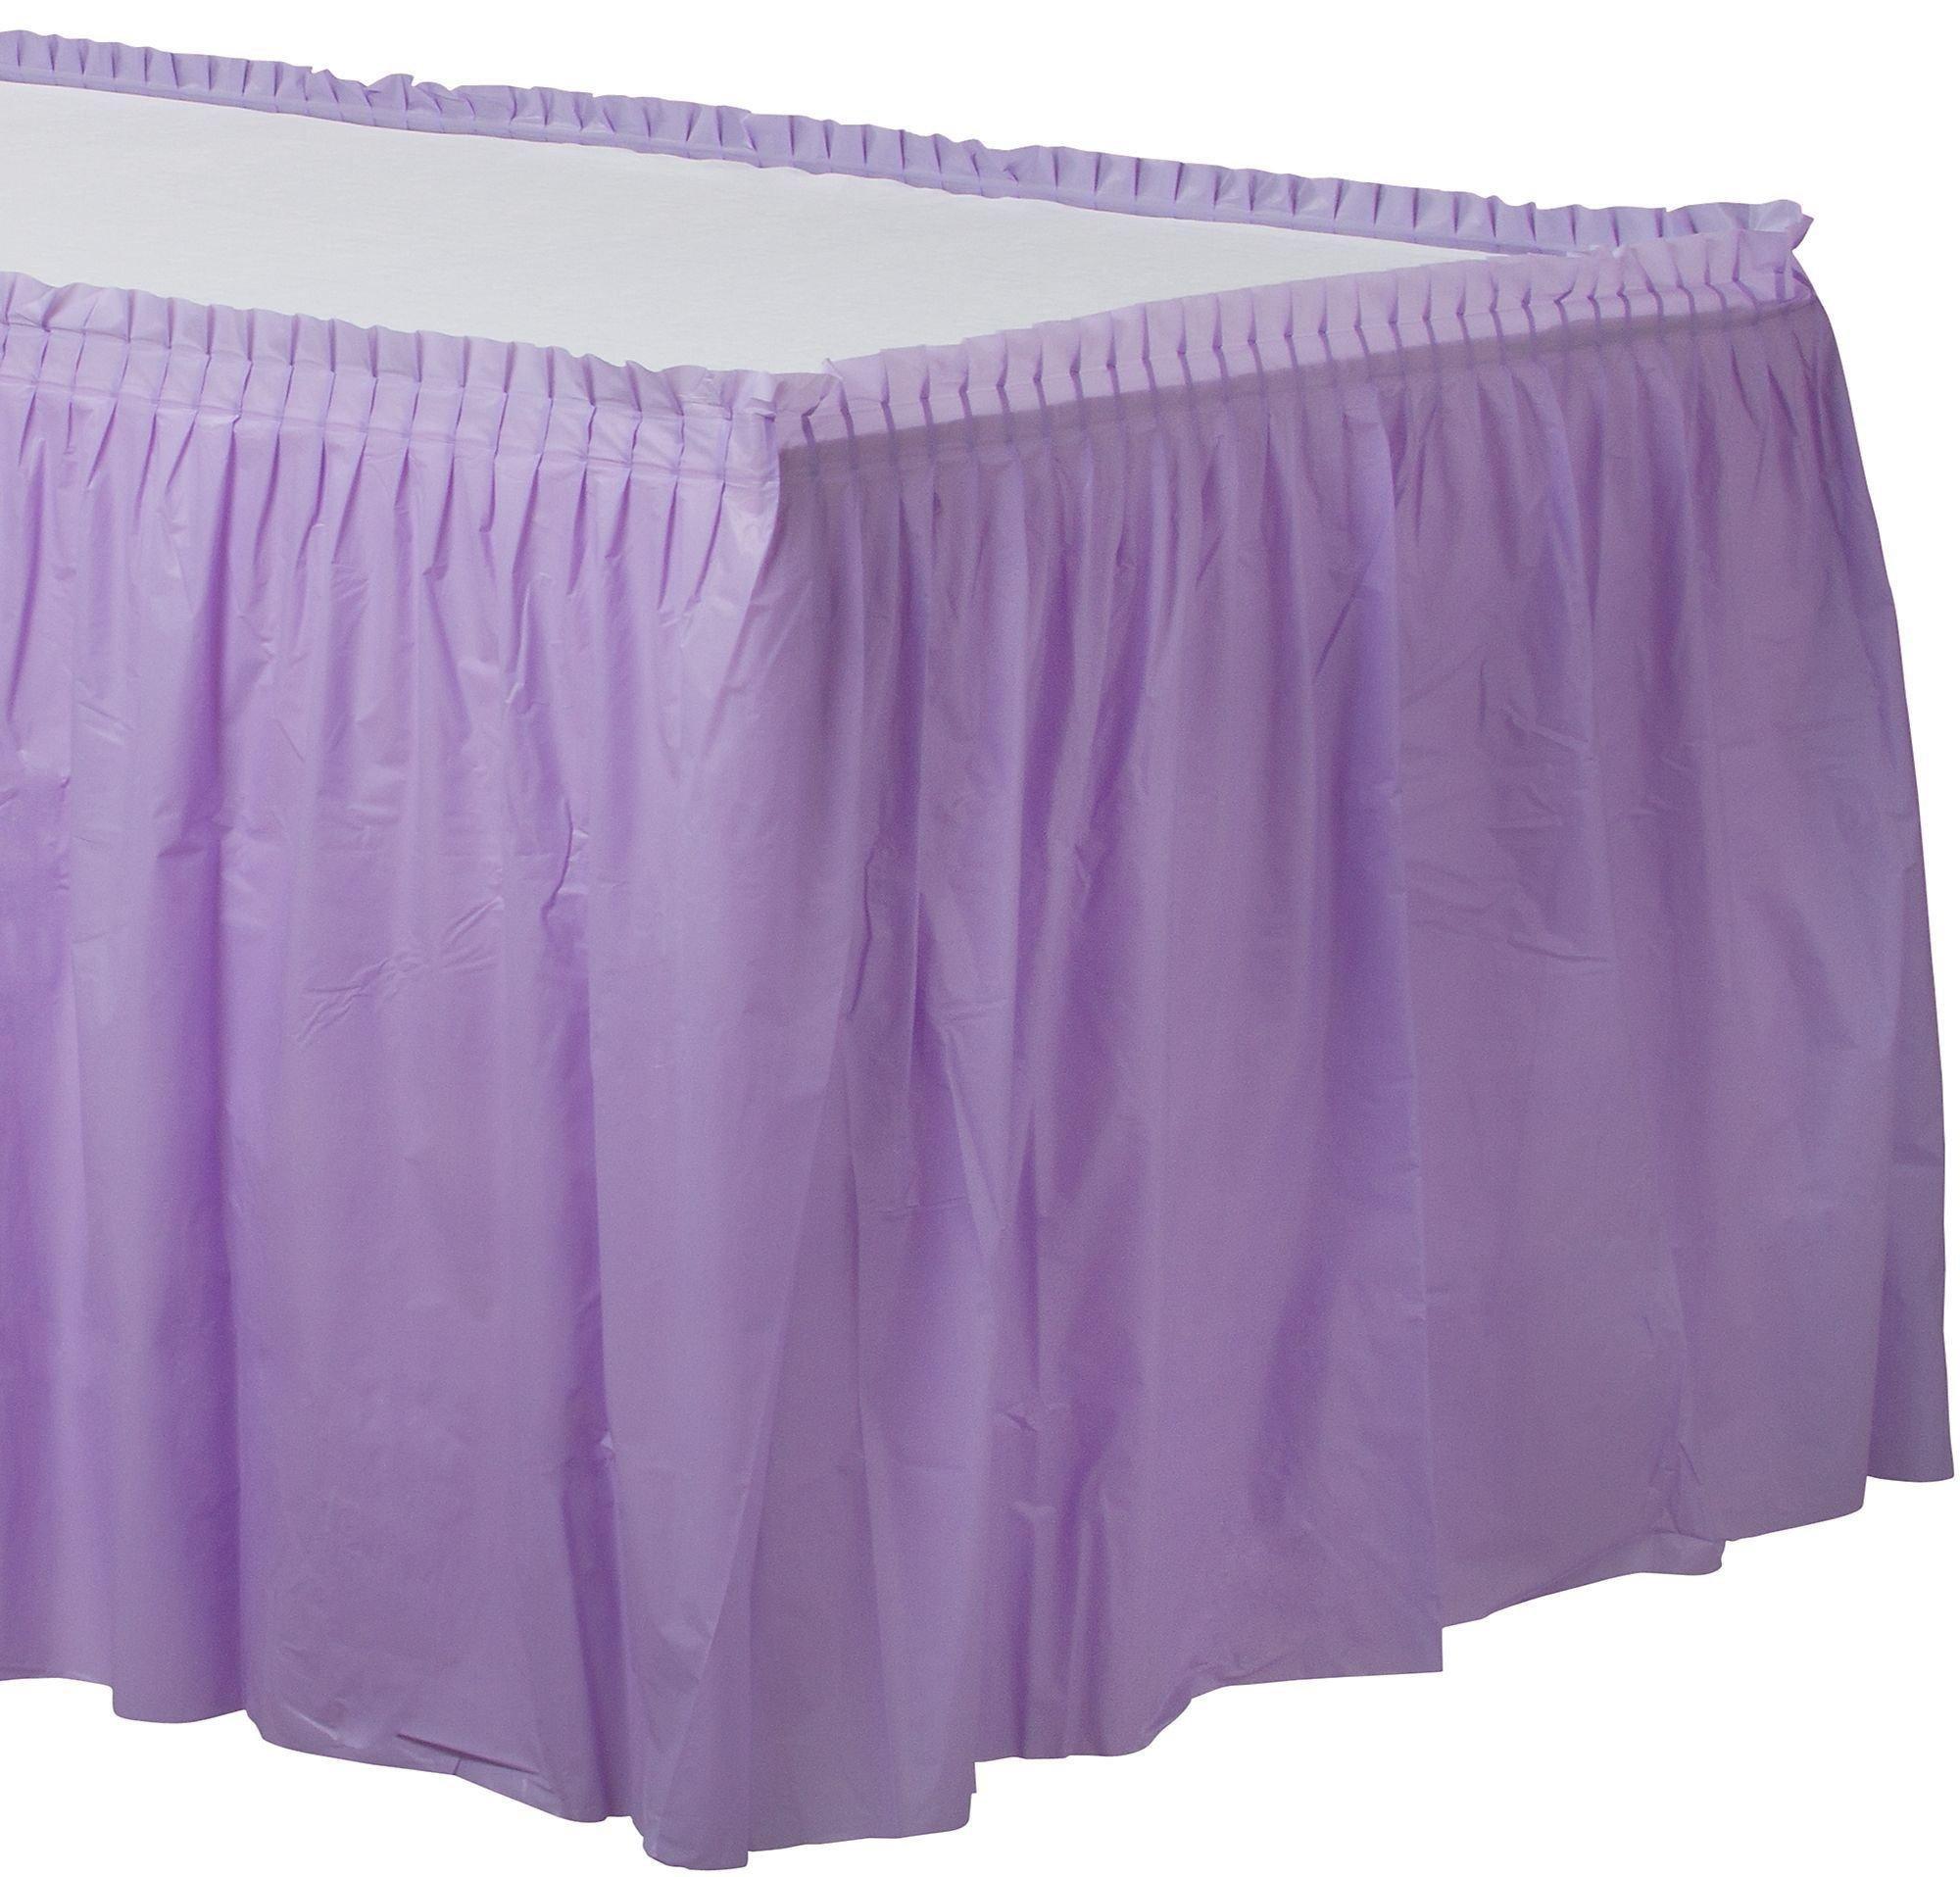 Lavender Plastic Table Skirt, 21ft x 29in